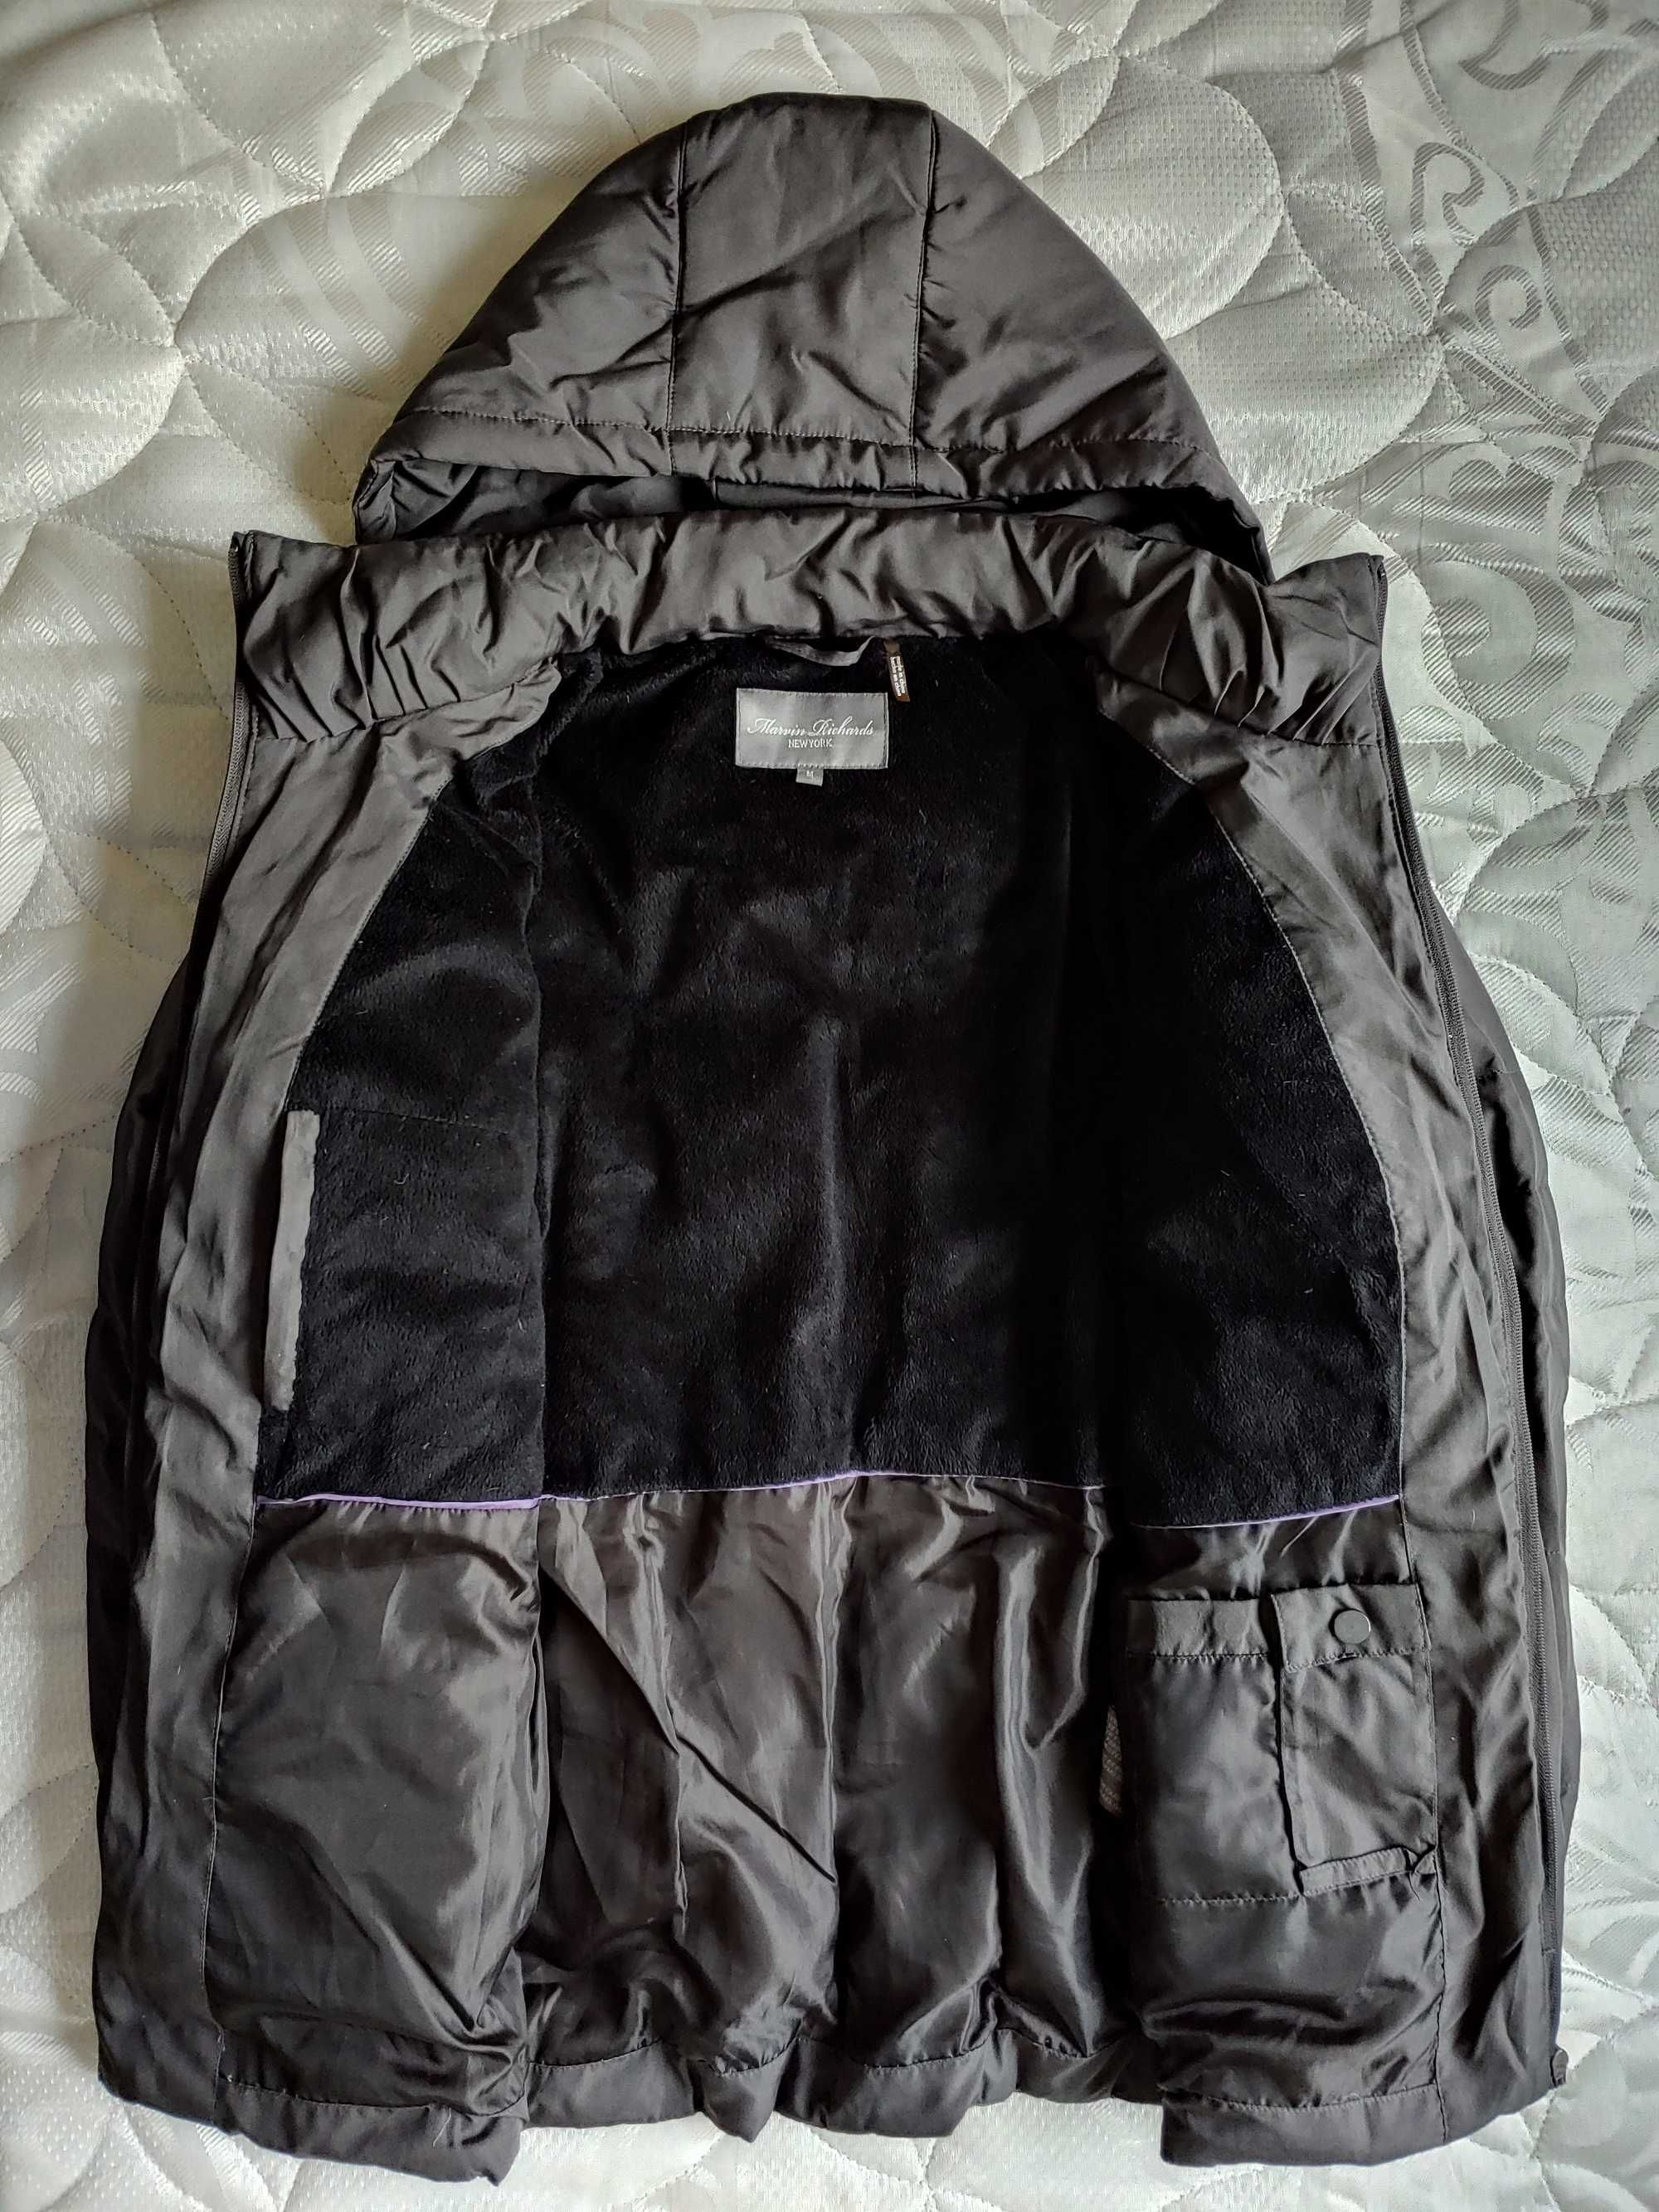 Куртка зимняя Marvin Richards, Esprit демисезонная, размер М (44-46).